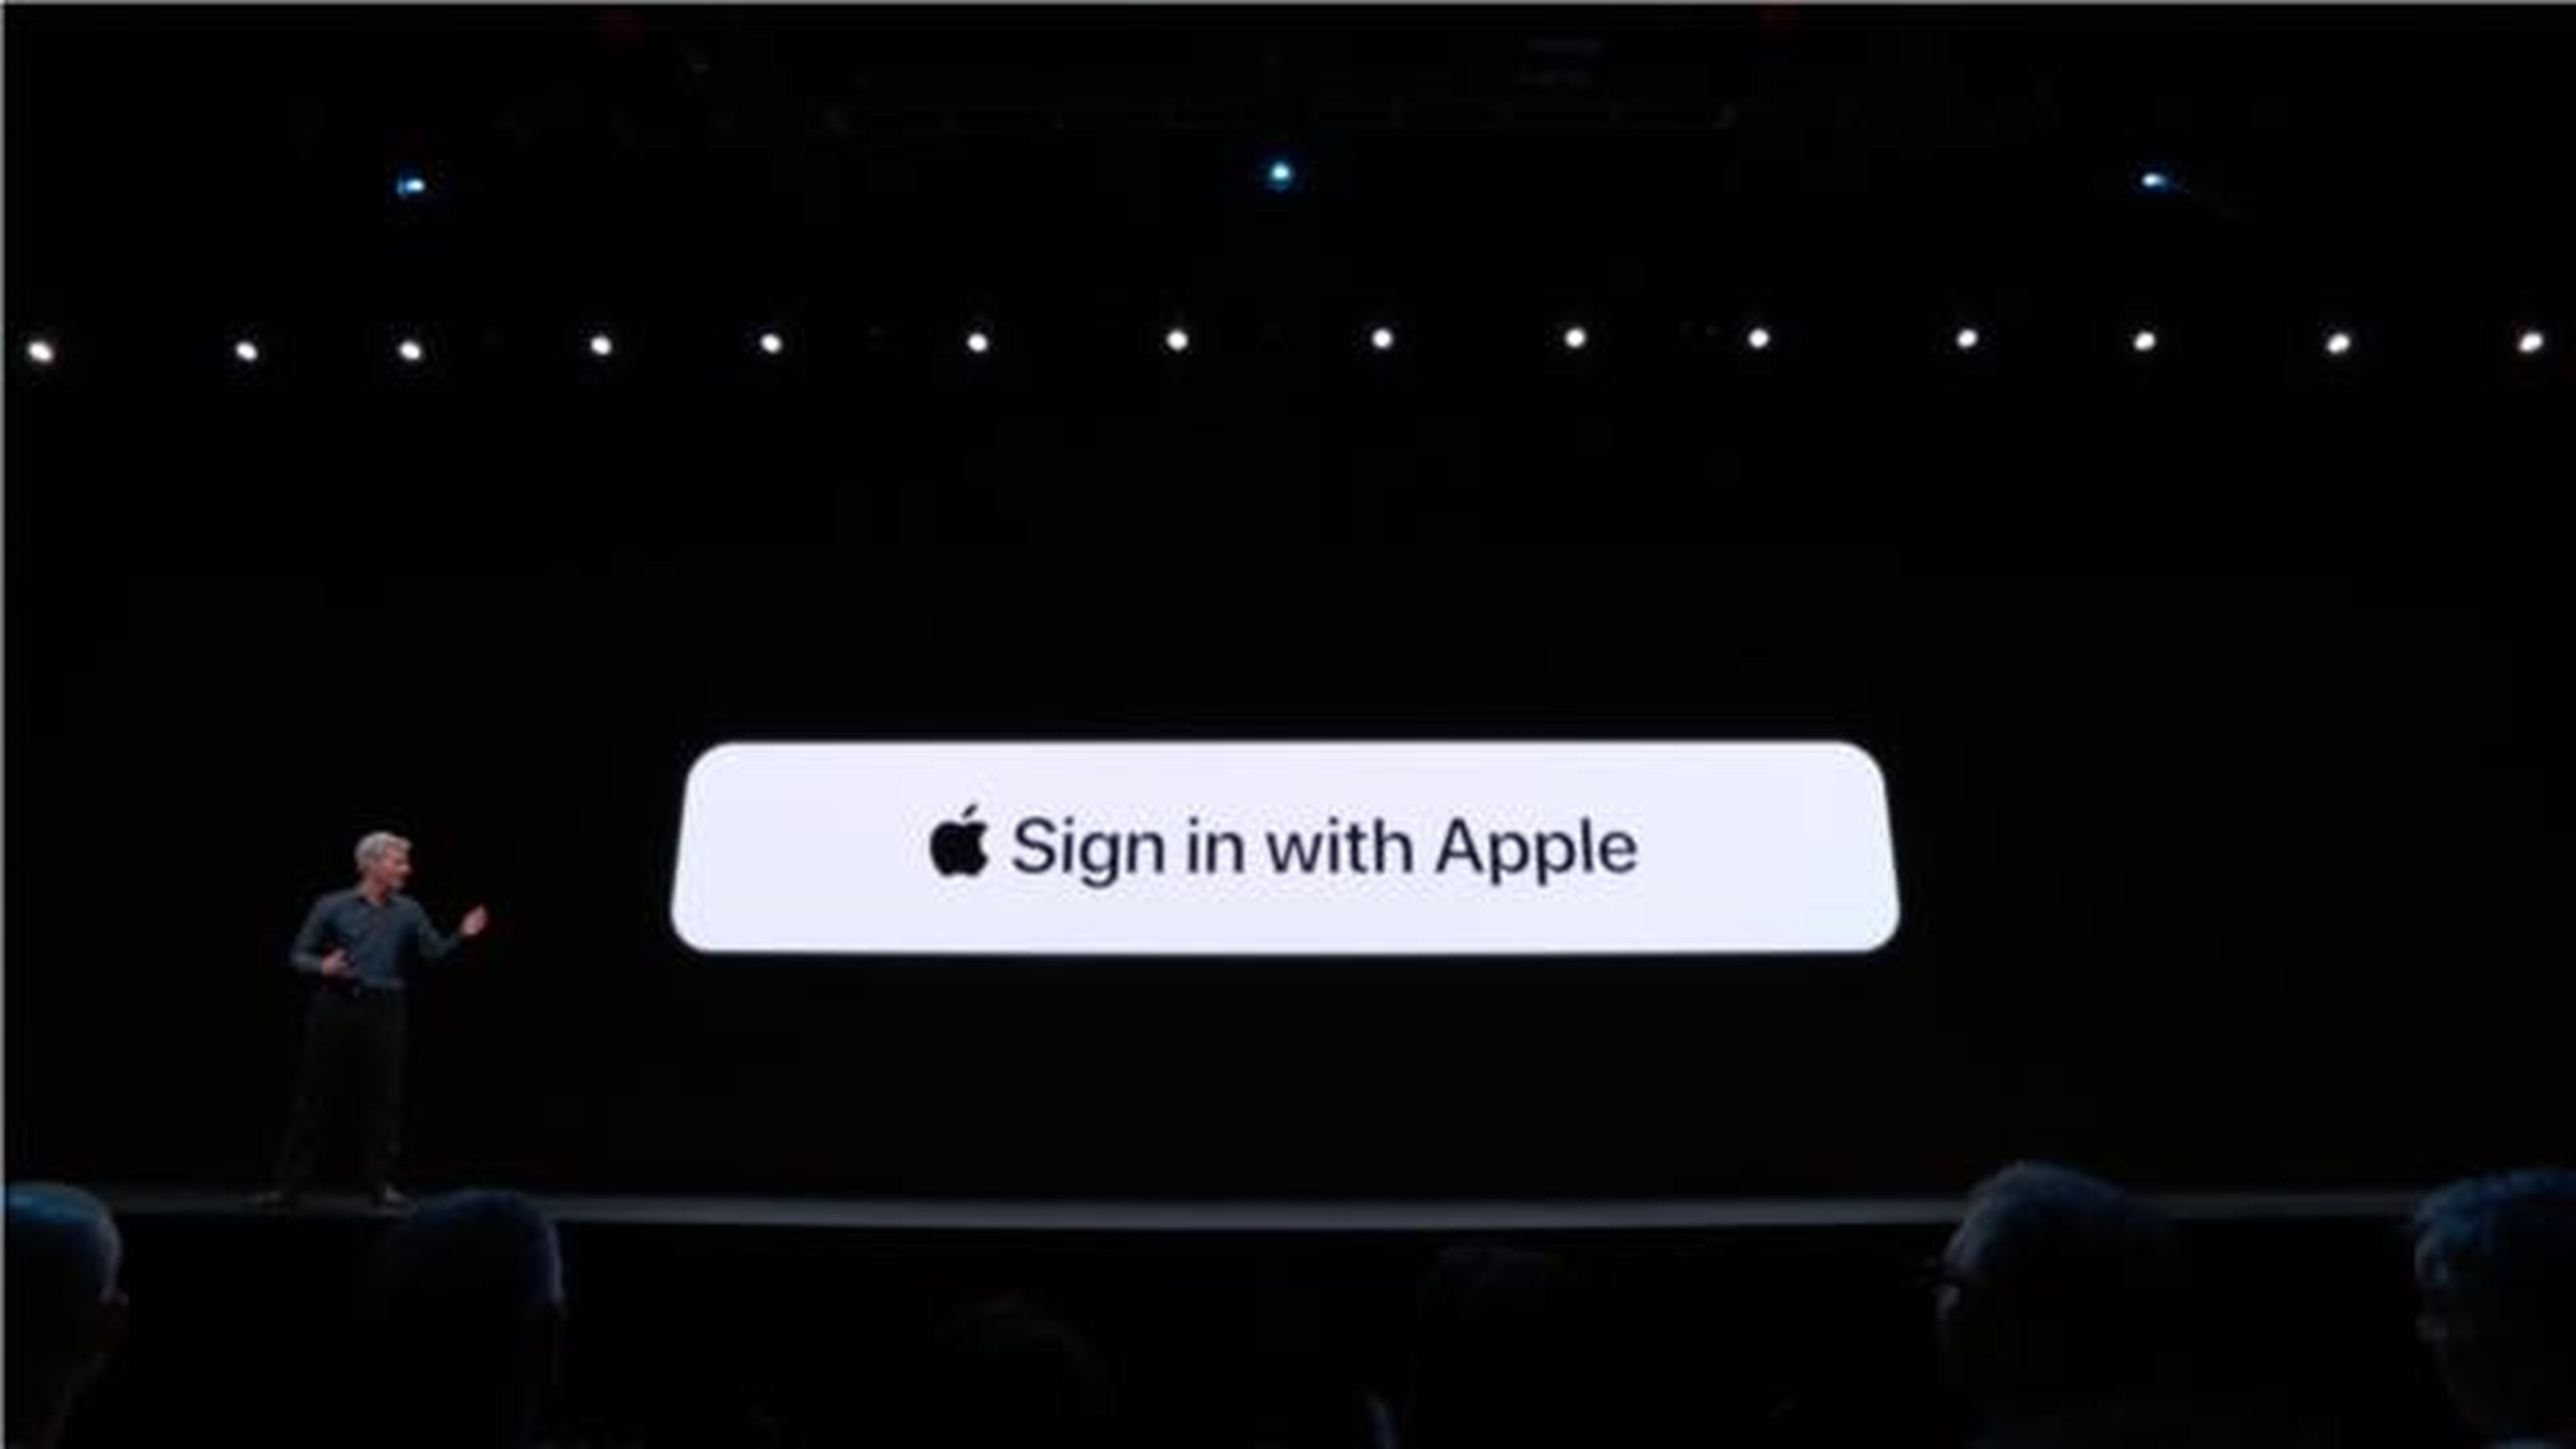 El nuevo botón de inicio de sesión con Apple te permitirá usar aplicaciones o servicios sin ofrecer ninguna información personal.